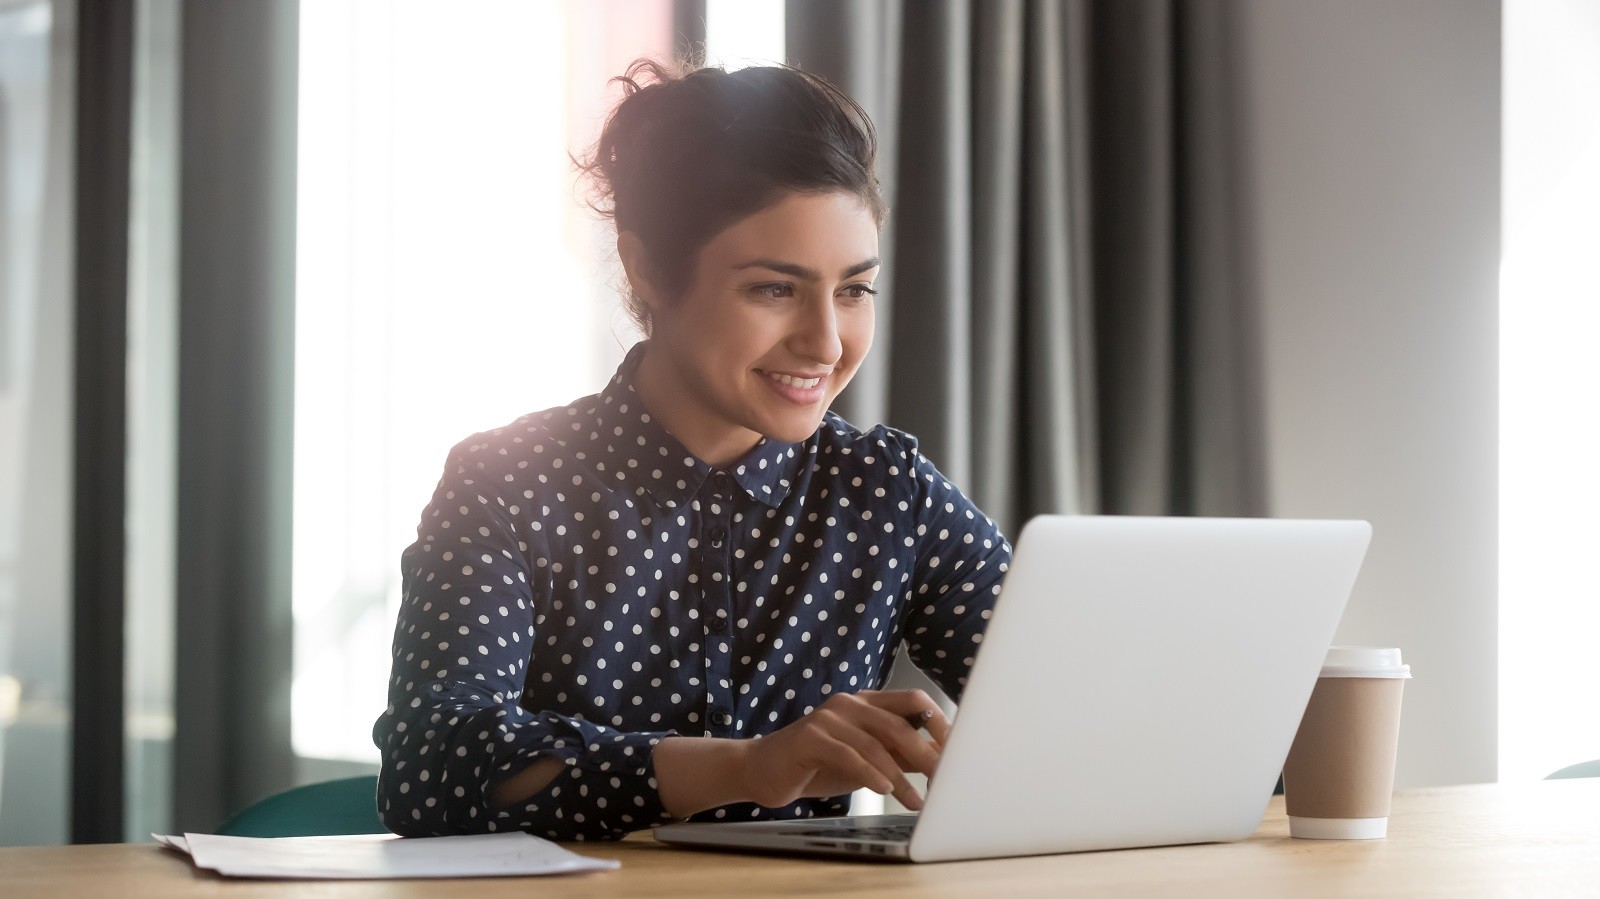 Kvinde i polkaprikket skjorte, der kigger entusiastisk på computerskærm